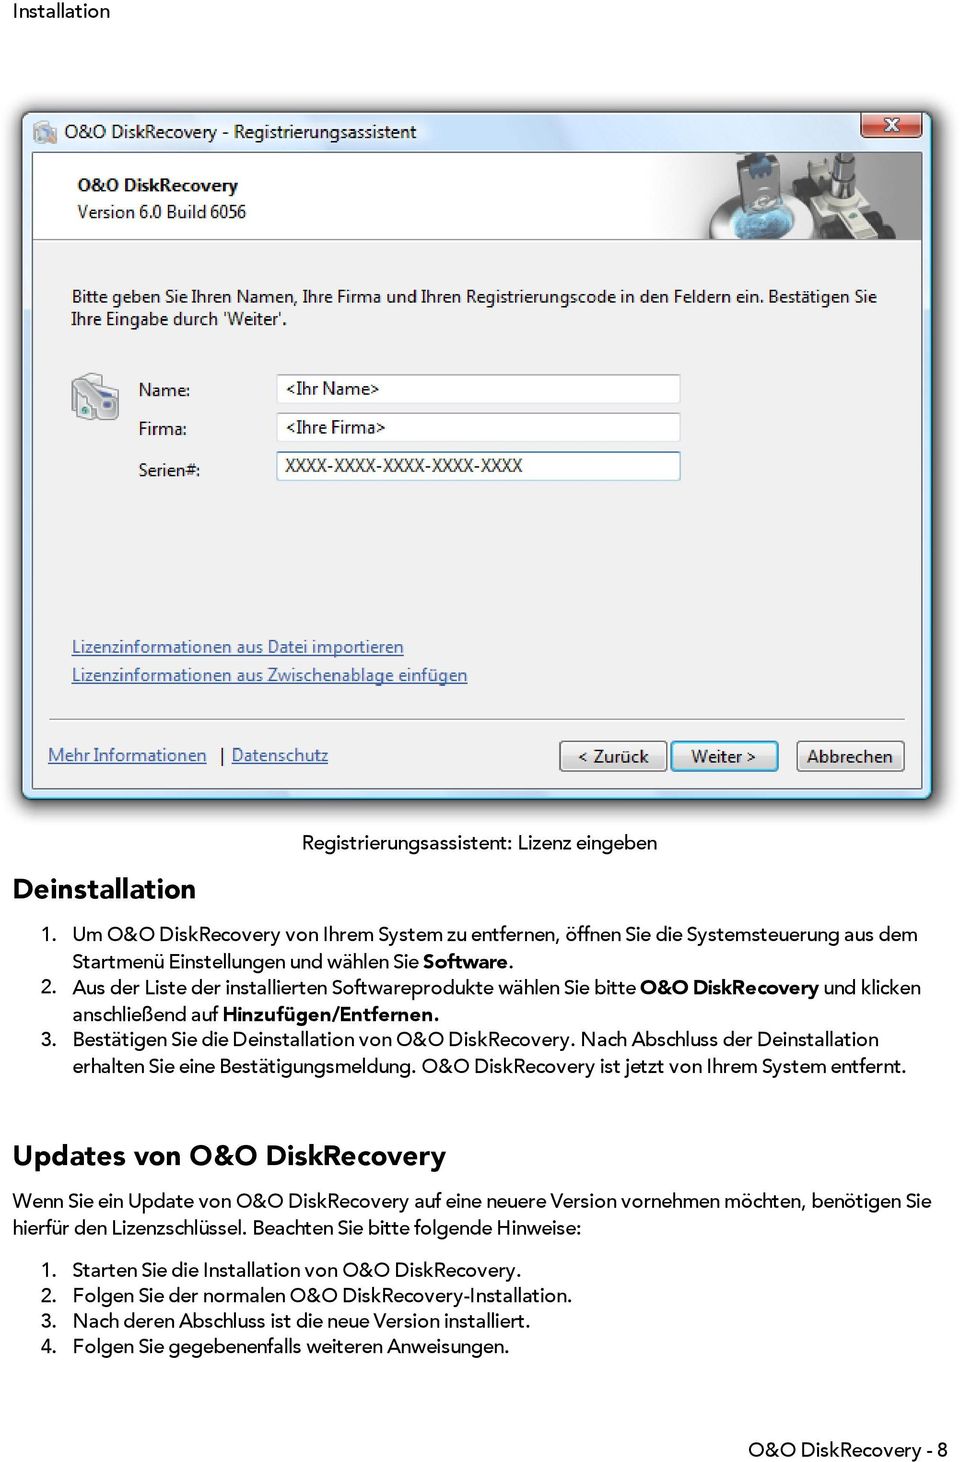 Aus der Liste der installierten Softwareprodukte wählen Sie bitte O&O DiskRecovery und klicken anschließend auf Hinzufügen/Entfernen. 3. Bestätigen Sie die Deinstallation von O&O DiskRecovery.